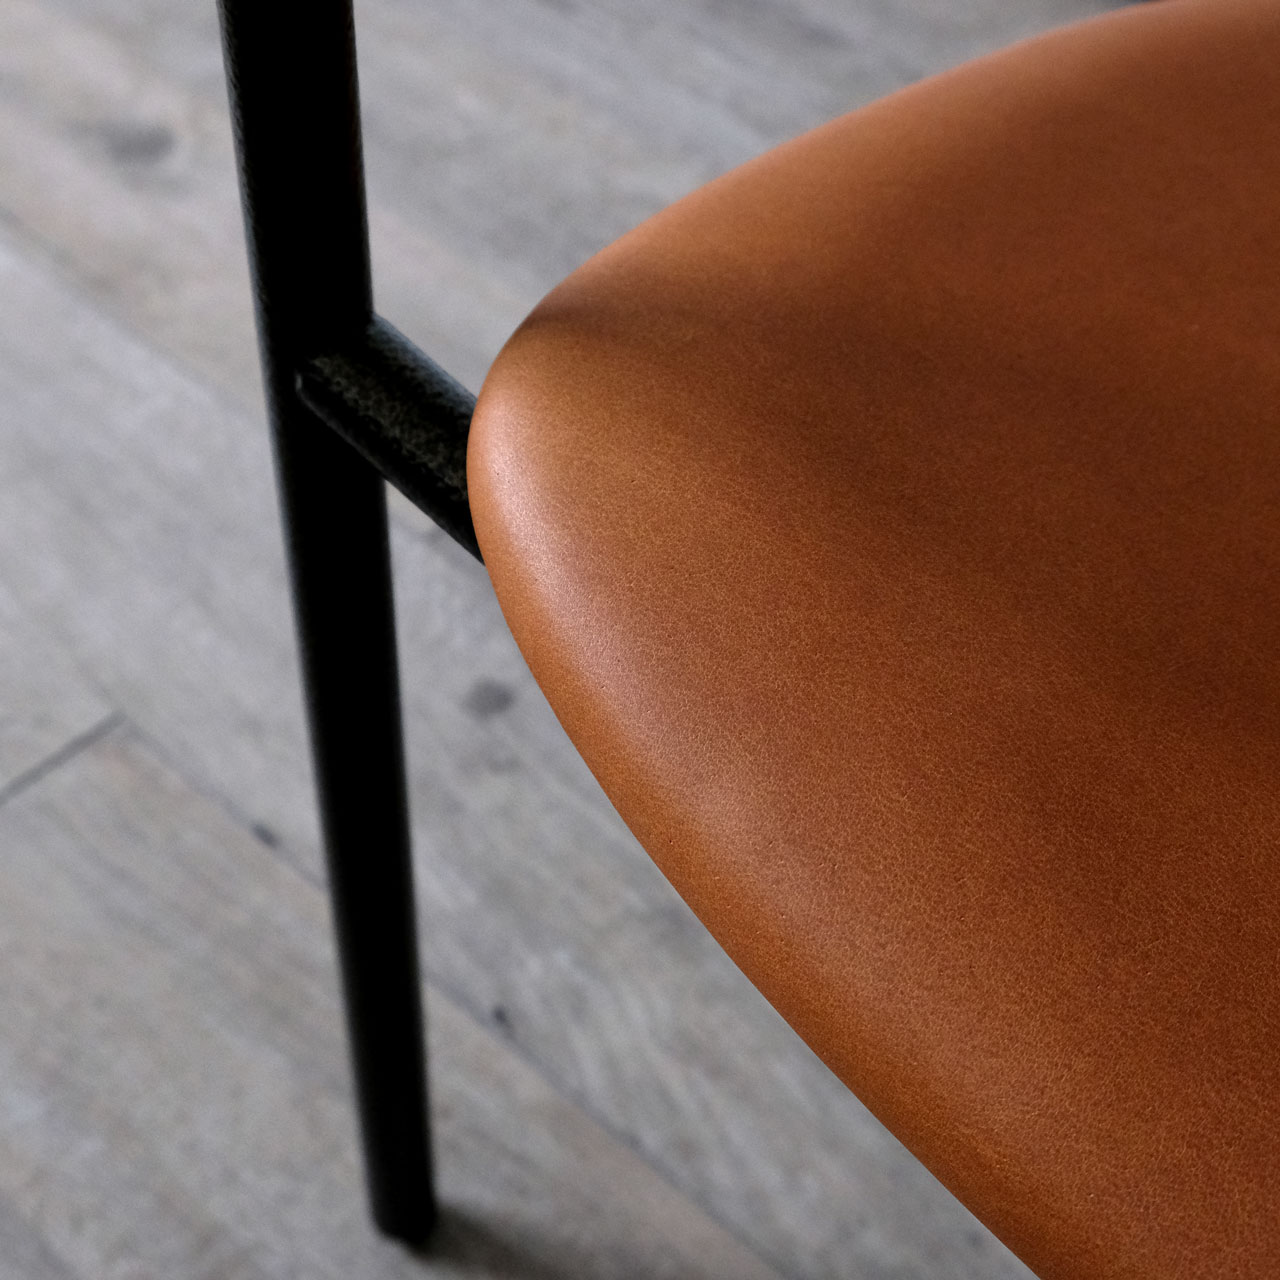 ラウンジチェア Lounge chair｜埼玉県吉川市の町工場 有限会社山口製作所 オリジナル家具デザイン製品